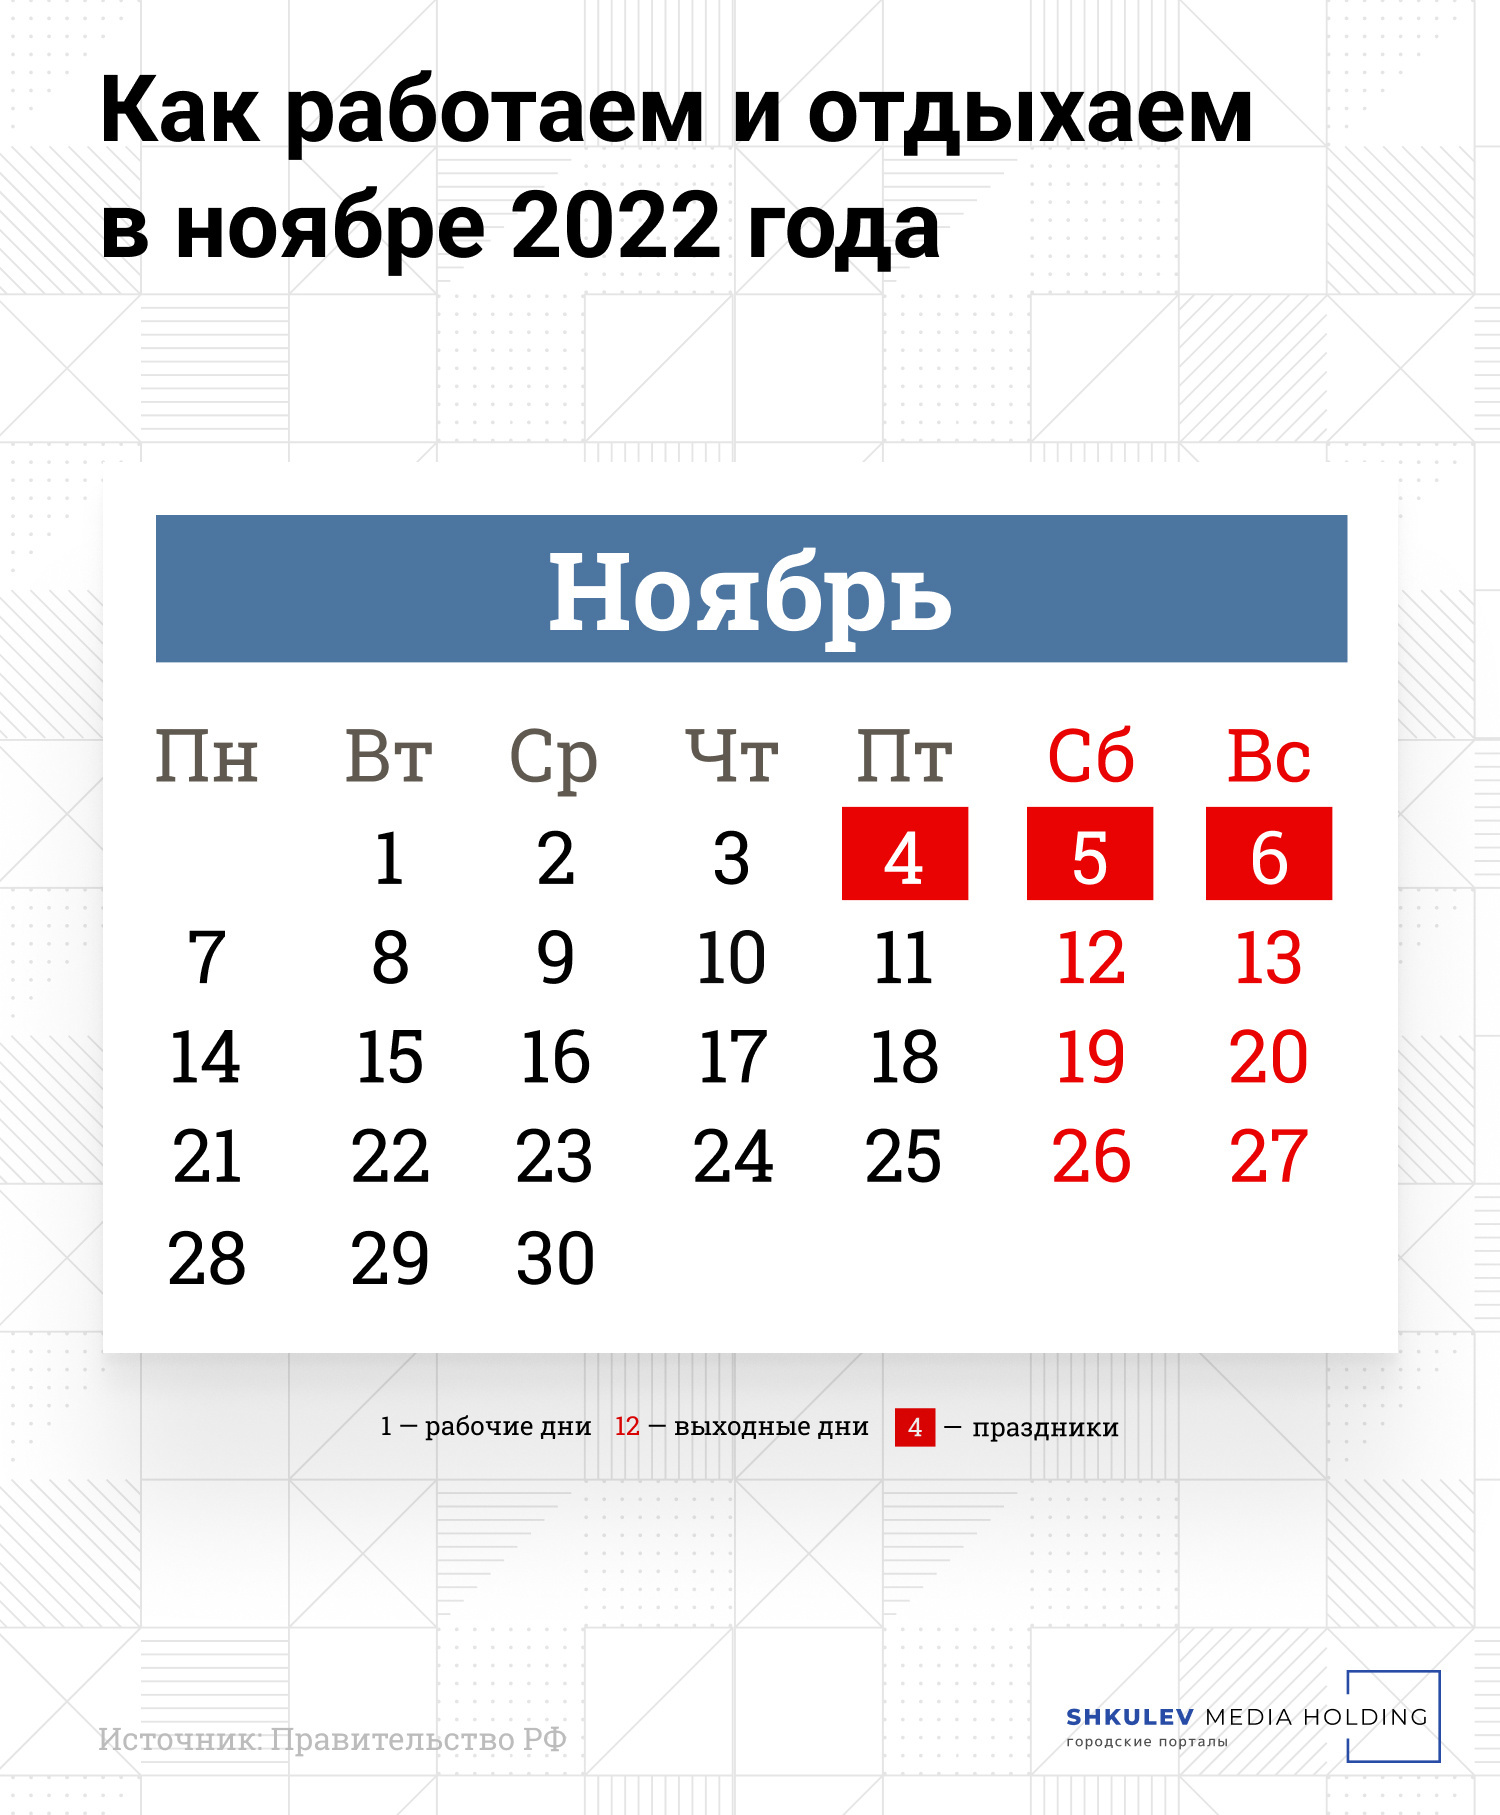 Новые законы с 1 ноября 2022 года в России: обзор и последствия